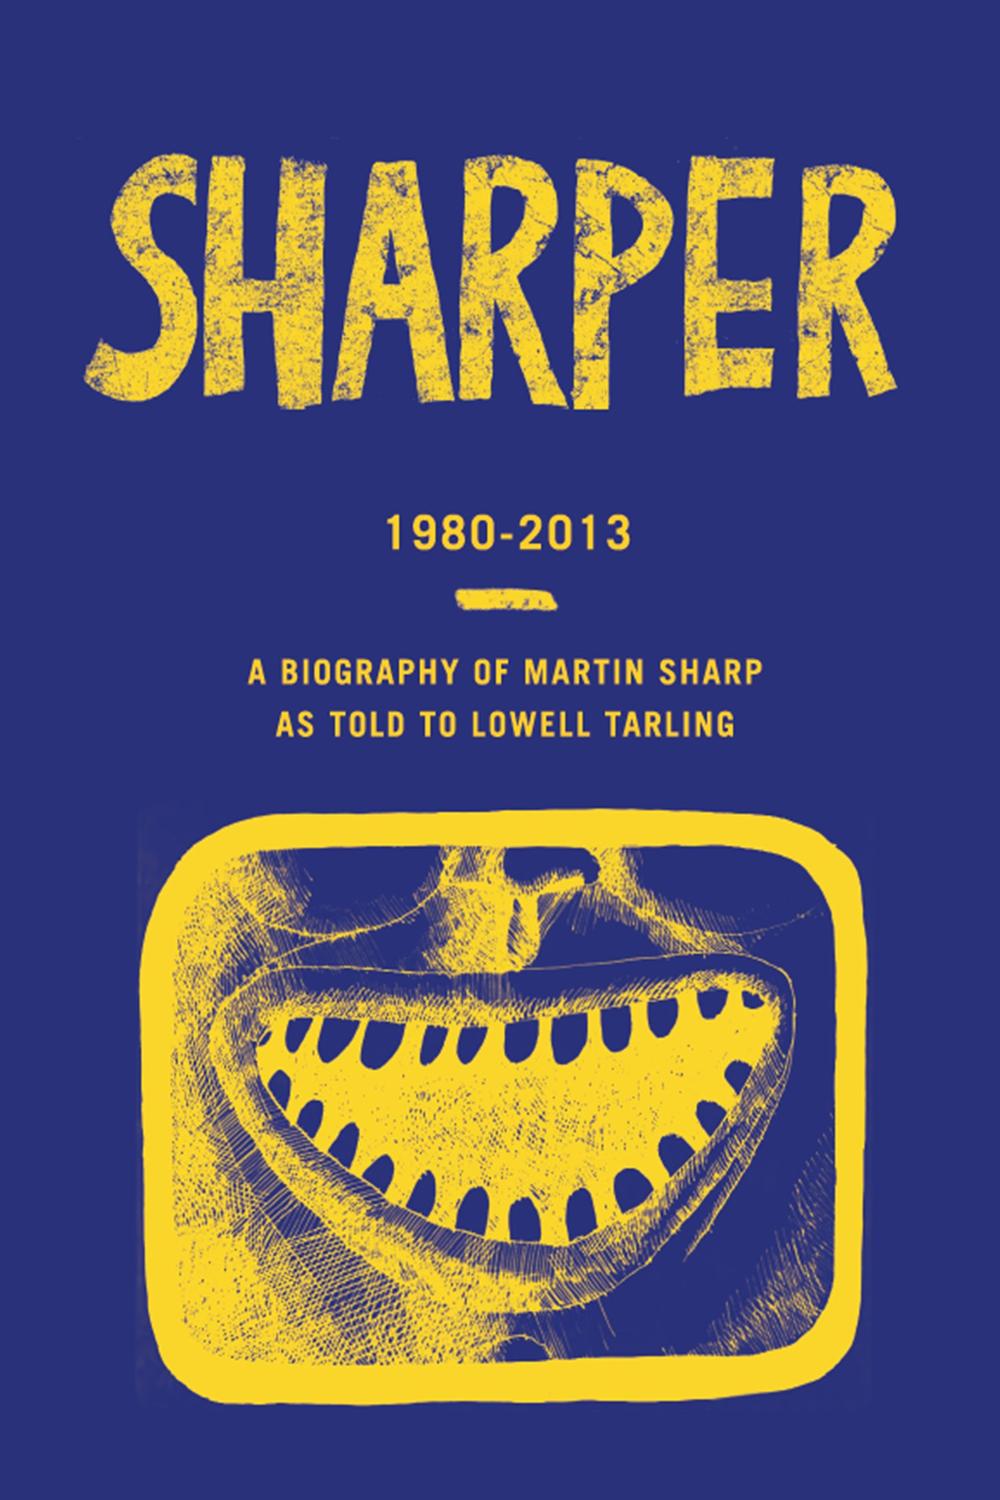 Sharper 1980-2013 - Lowell Tarling